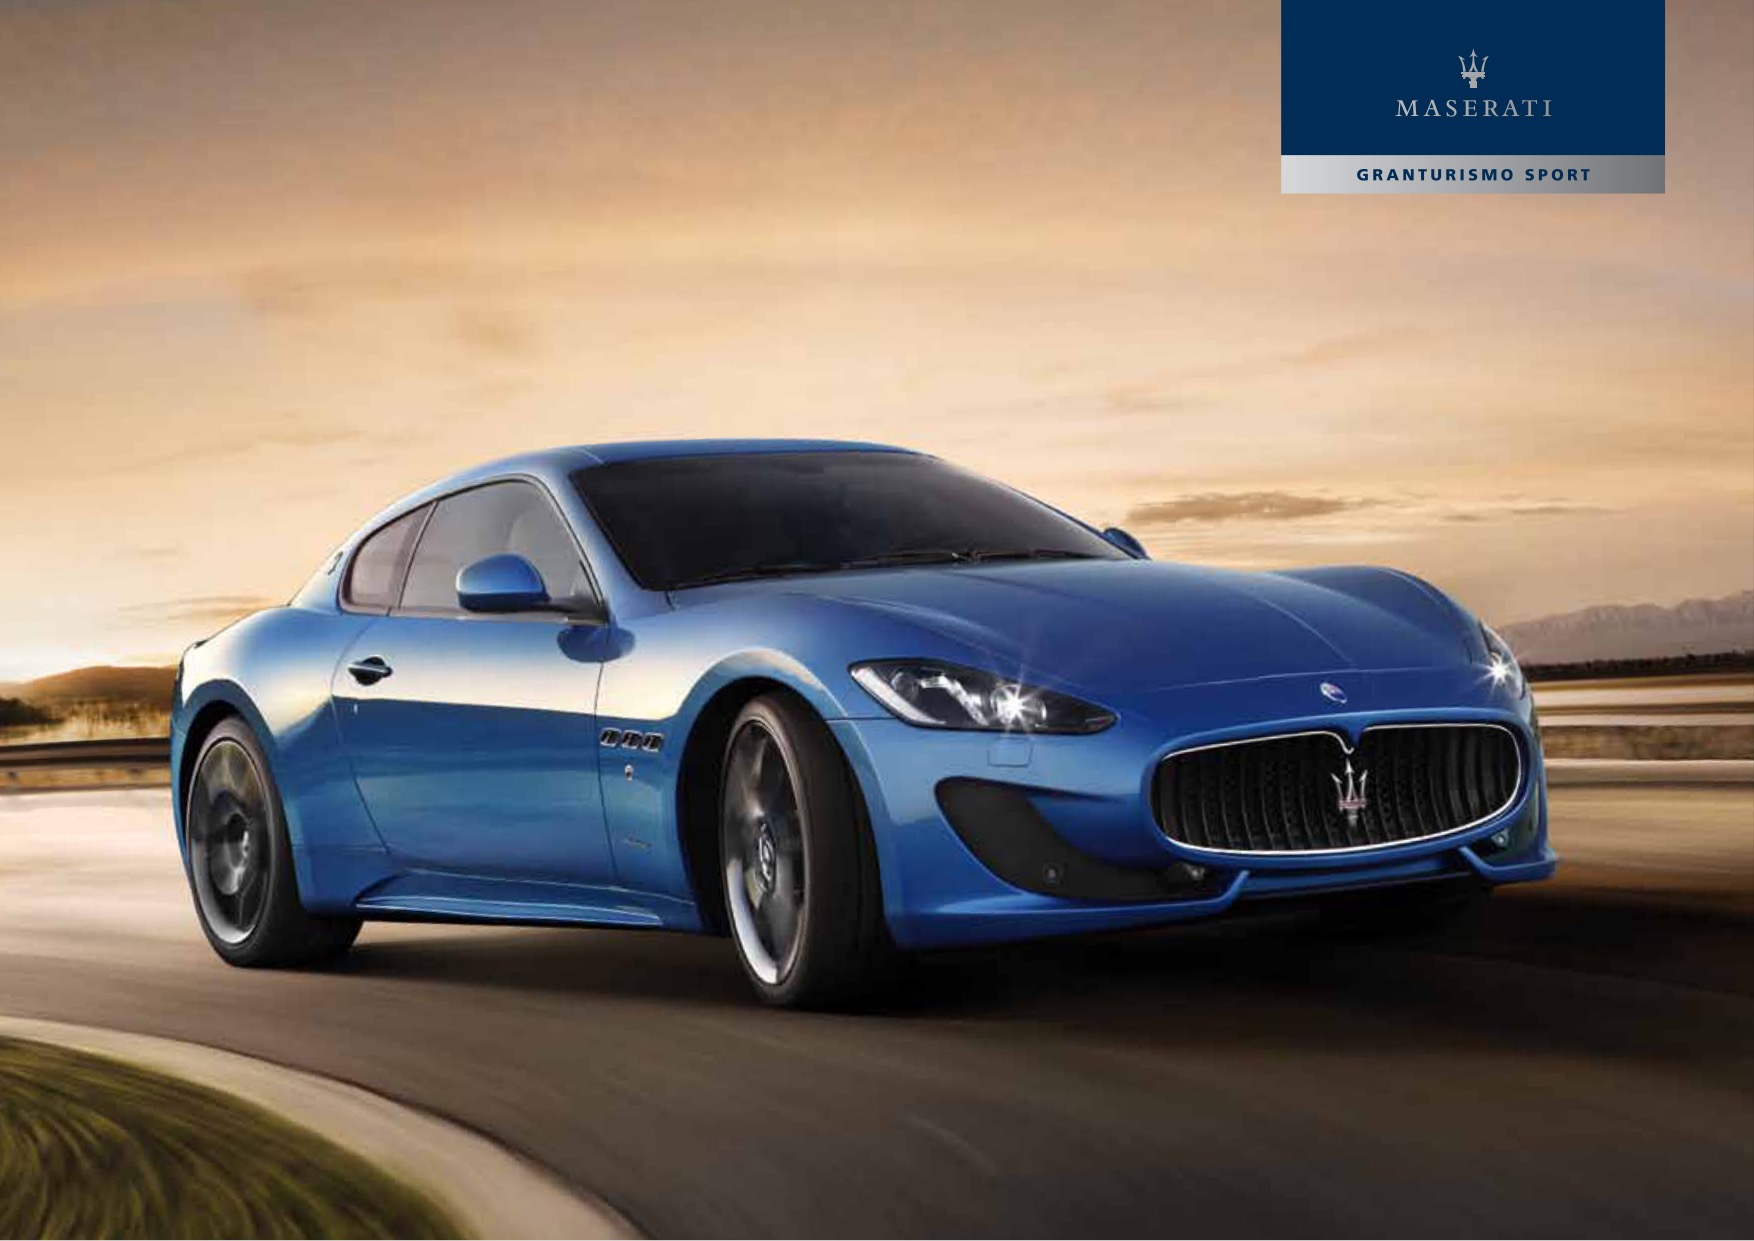 2015 Maserati Granturismo Brochure